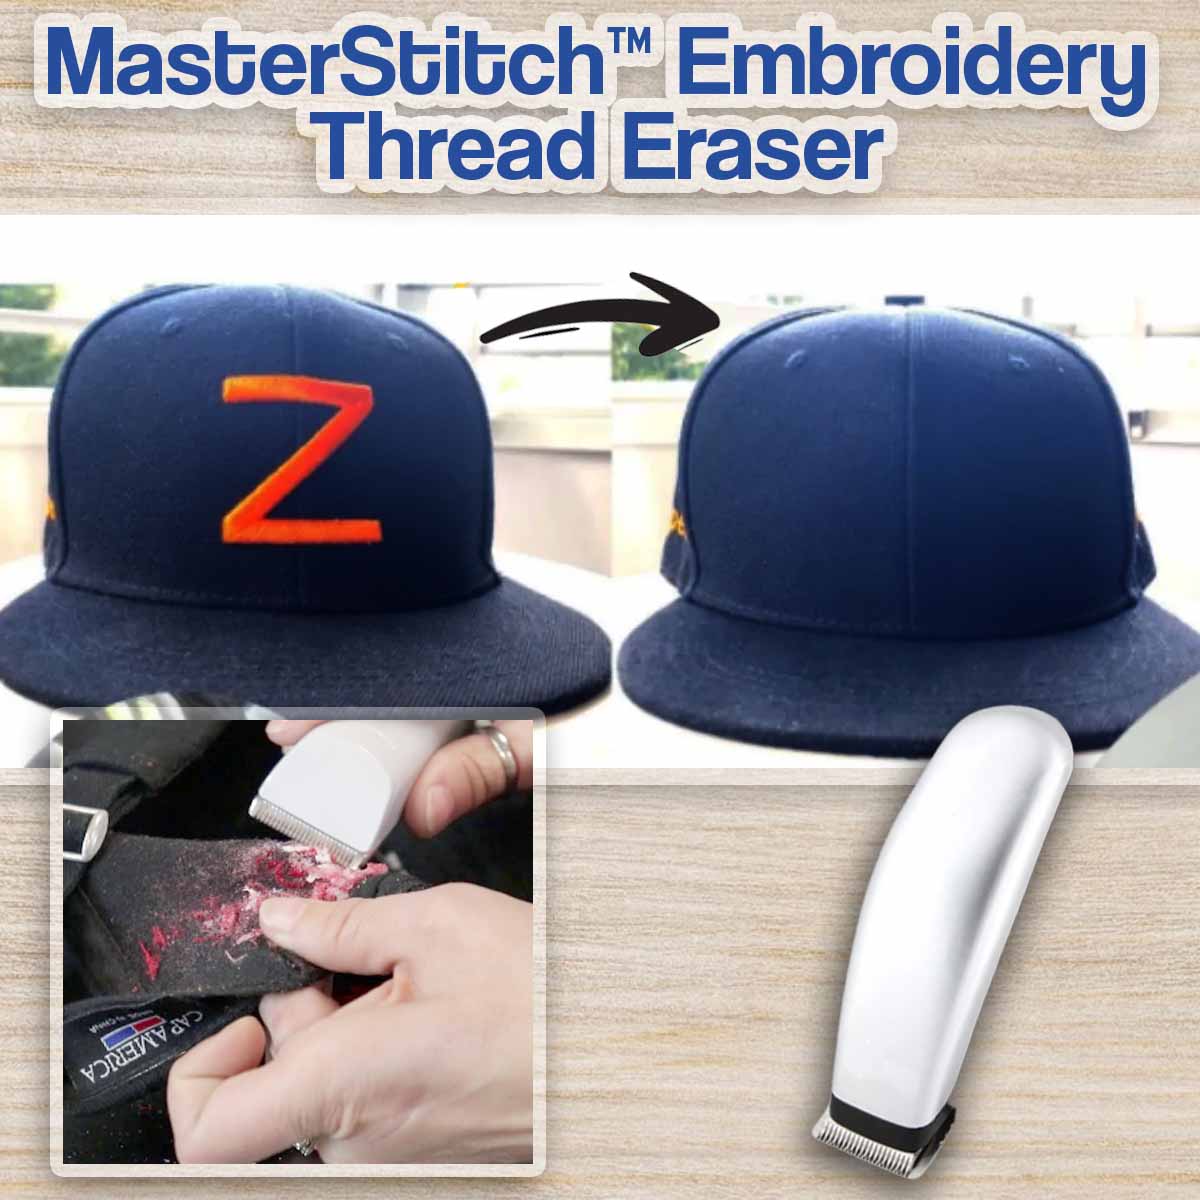 MasterStitch™ Embroidery Thread Eraser - Savoury Eve